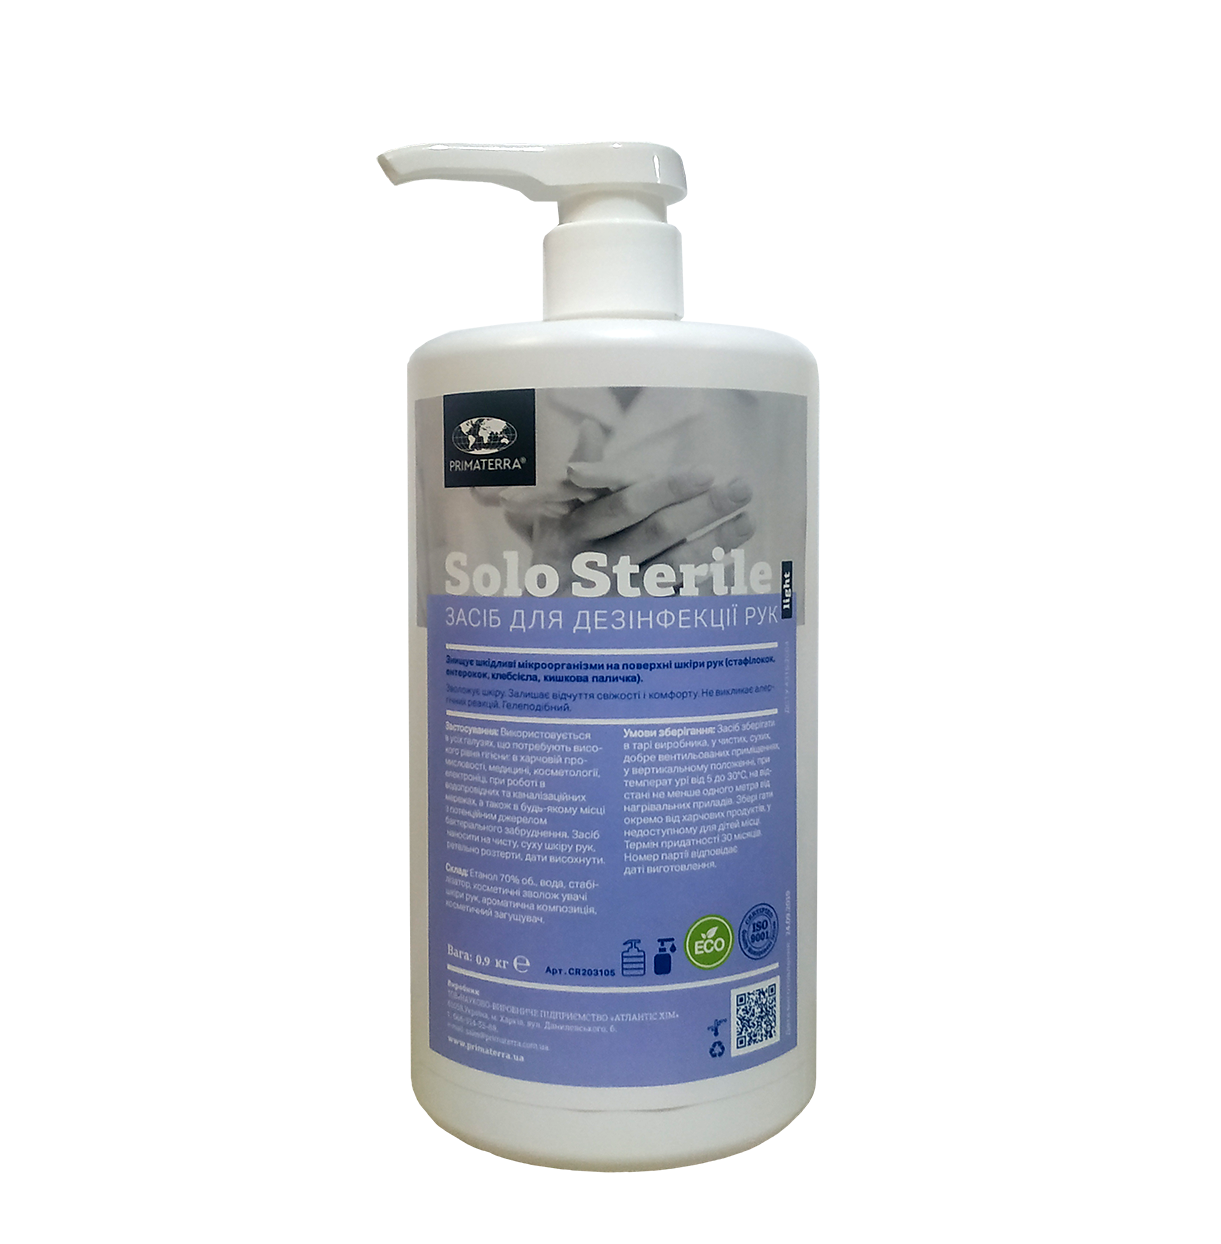 Очищуючий спрей c антисептичними властивостями "SOLO sterile+" 0,9 кг